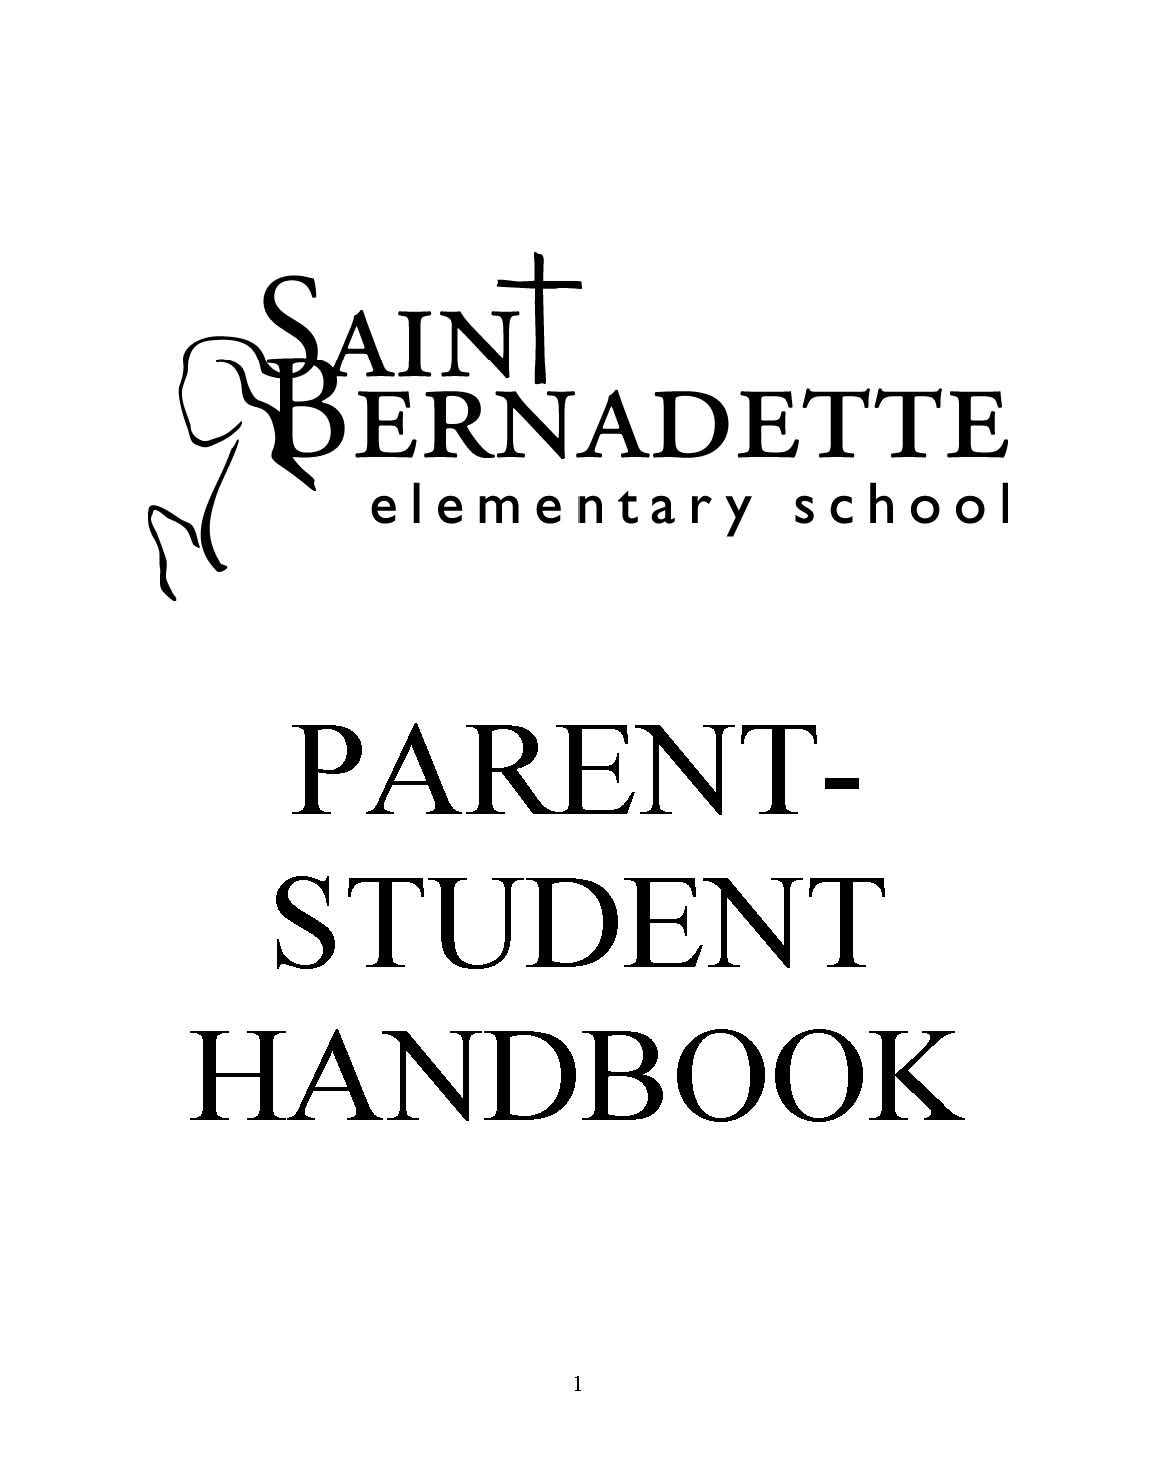 St. Bernadette Elementary School parent Student HAndbool 2018